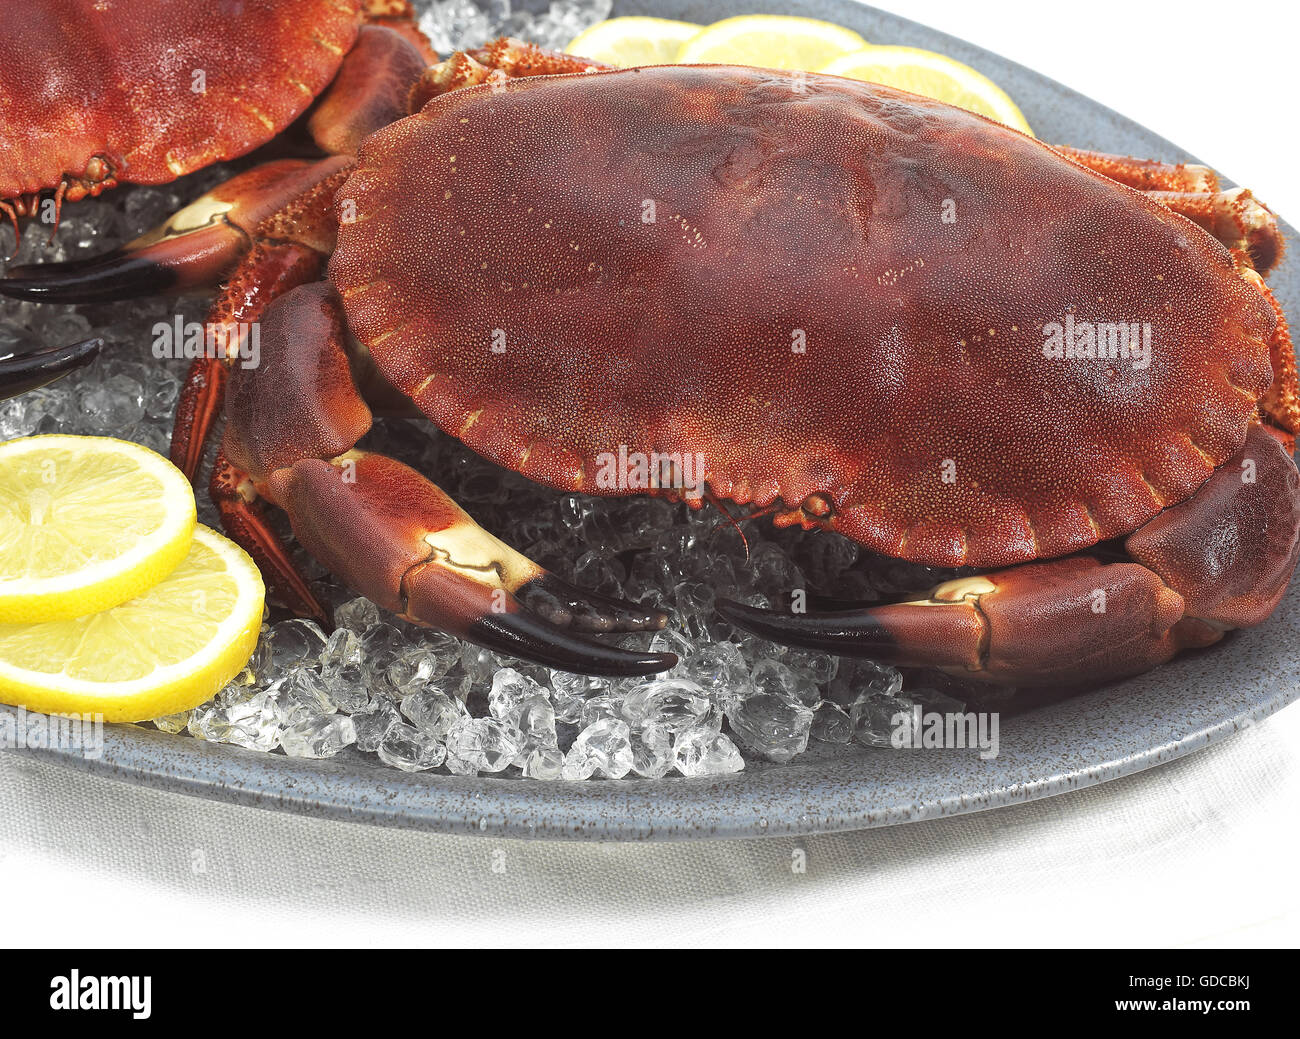 Crabe, Cancer pagurus, crustacé dans une assiette avec de la glace contre fond blanc Banque D'Images